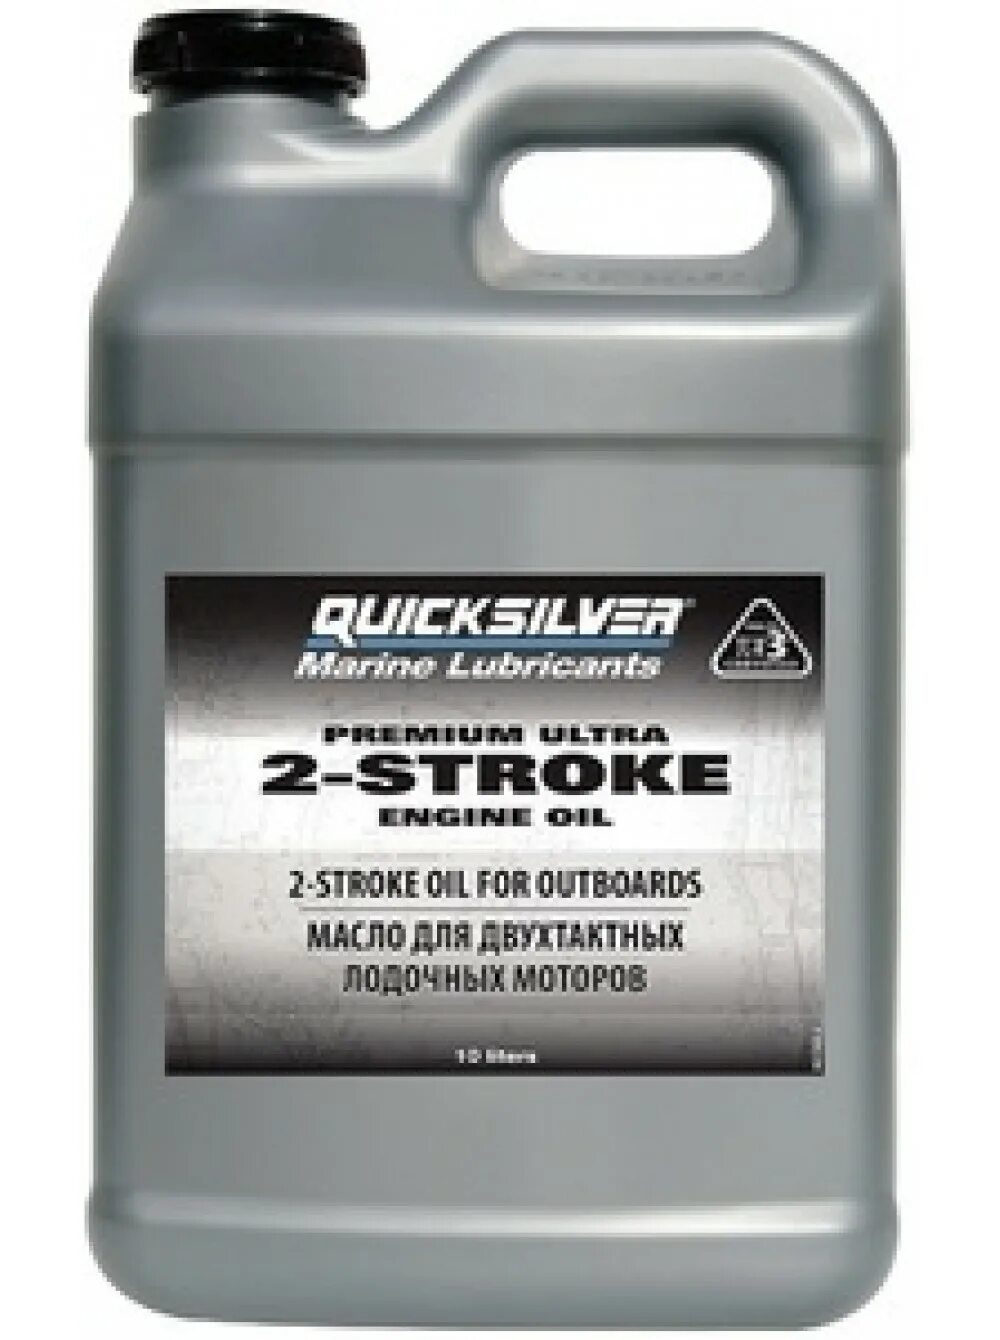 Масло Quicksilver 2-stroke. Quicksilver масло для лодочных моторов 2 тактных. Масло для 2-тактных моторов Quicksilver Premium Ultra TC-w3. Quicksilver Premium Ultra 2-stroke.